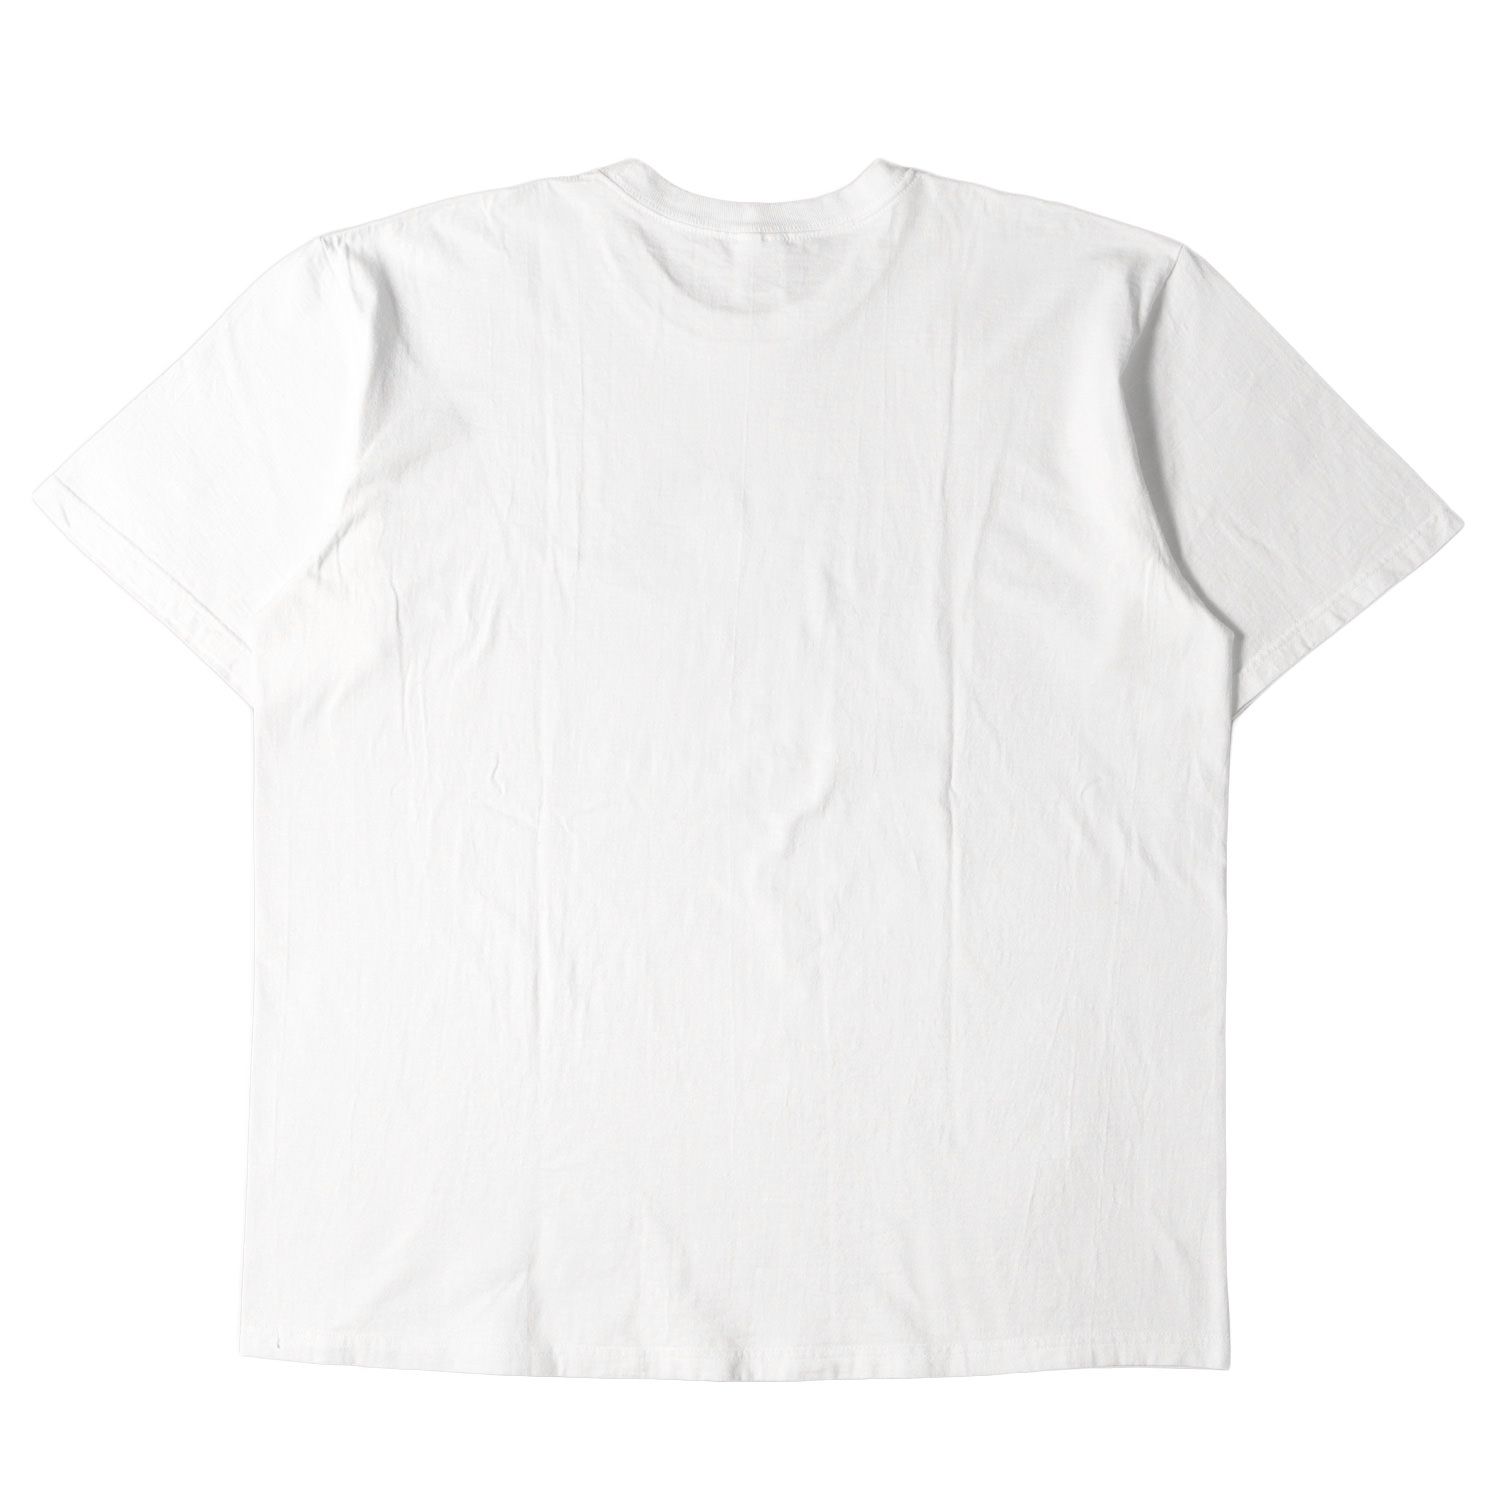 Supreme シュプリーム Tシャツ サイズ:XL 22SS レディー グラフィック クルーネック Tシャツ Love That Tee ホワイト 白 トップス カットソー 半袖 【メンズ】